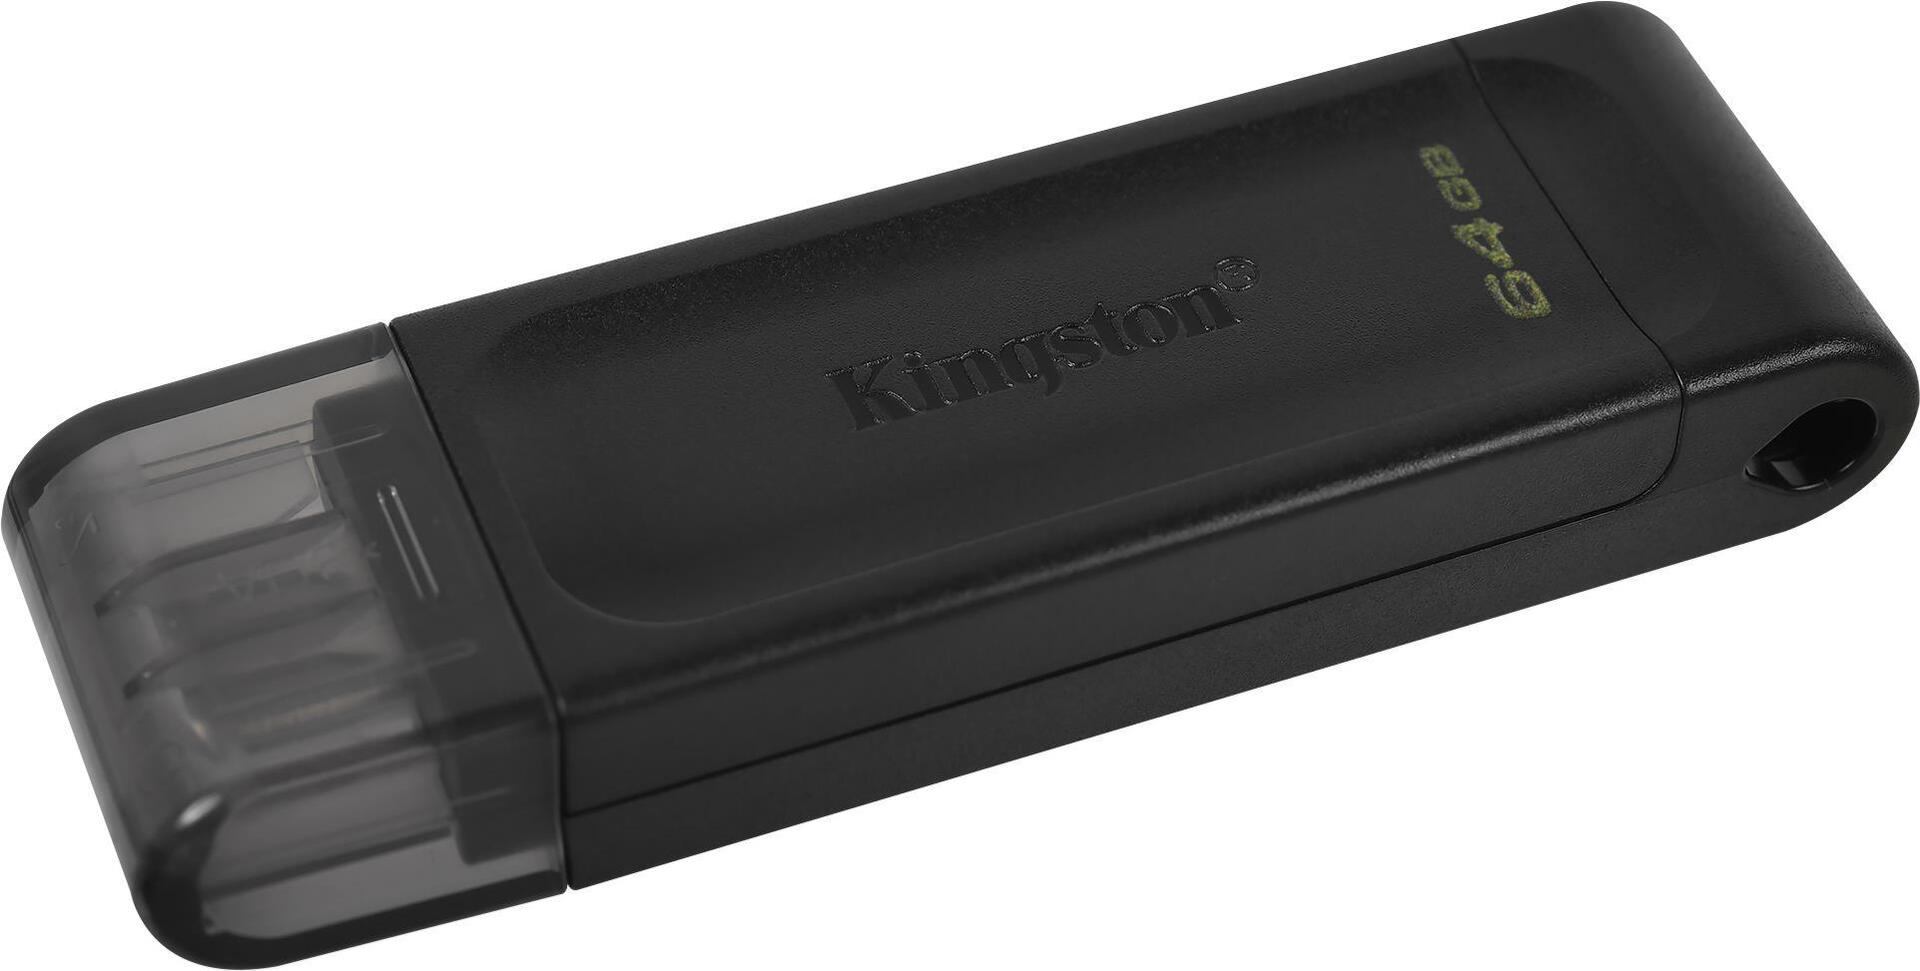 Kingston DataTraveler 70 (DT70/64GB)